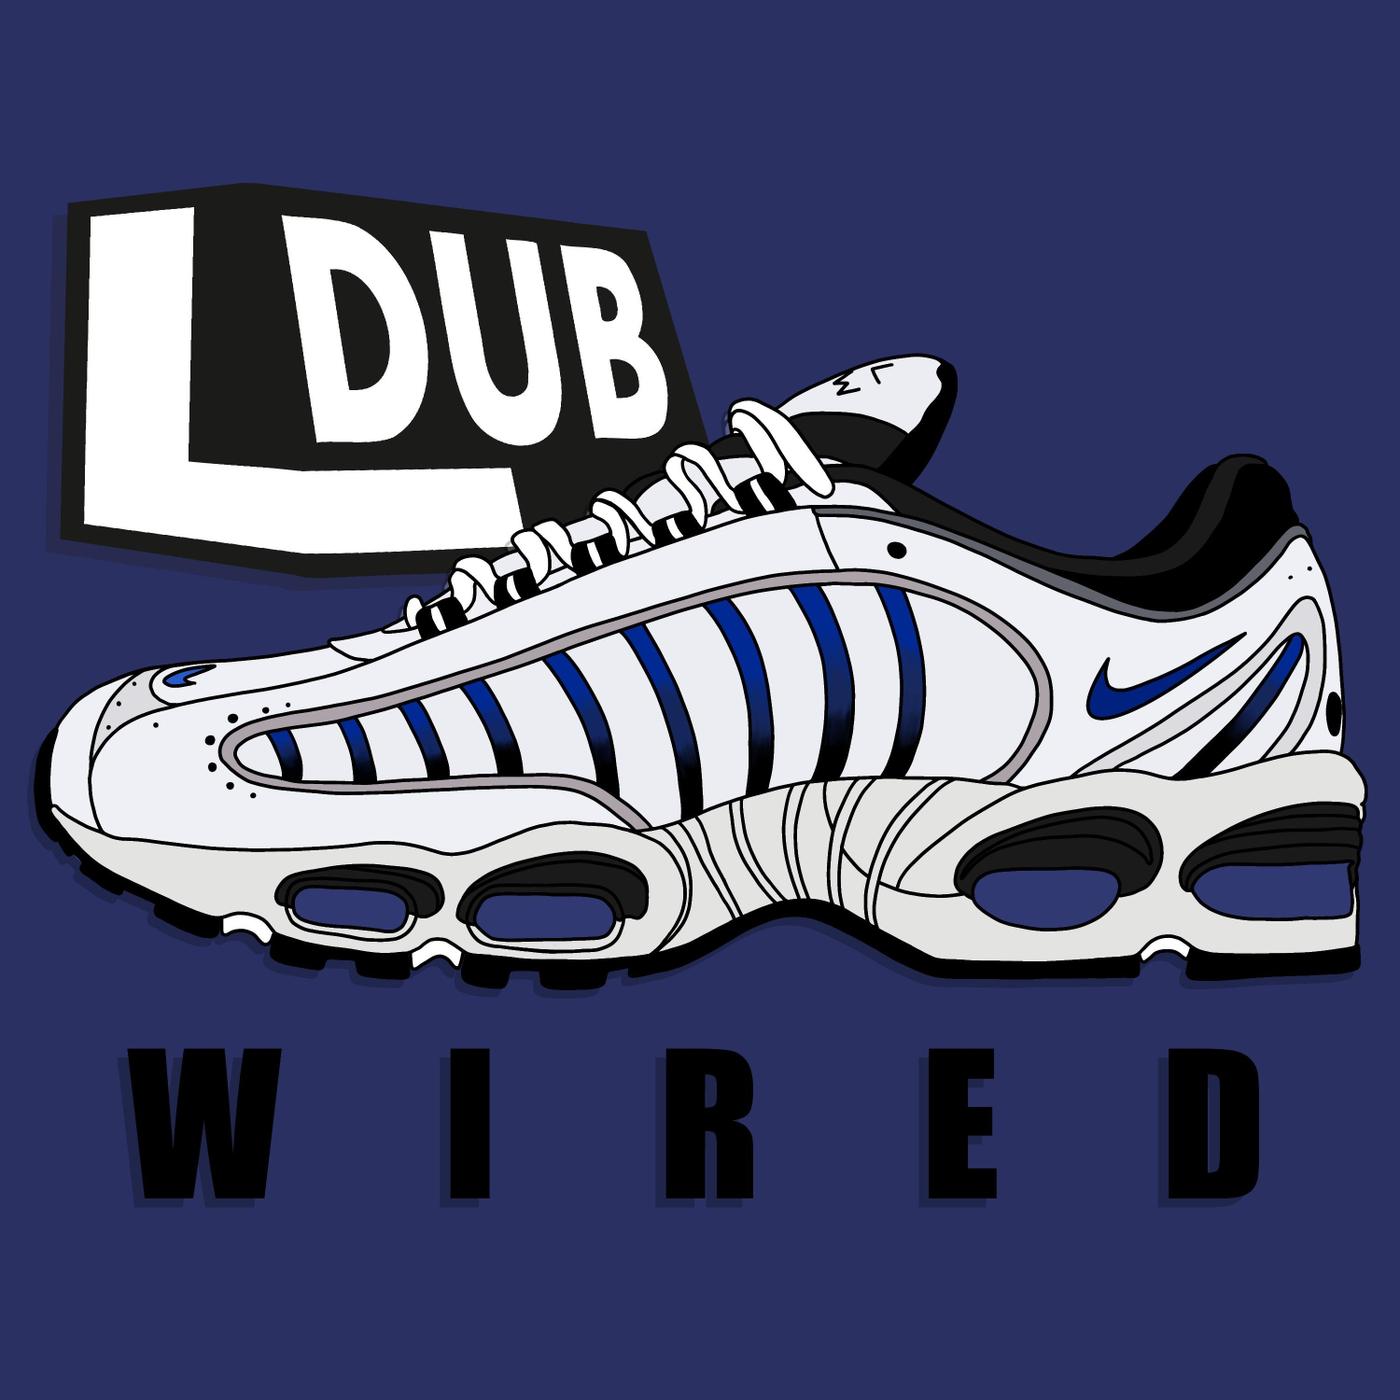 LDUB - Wired